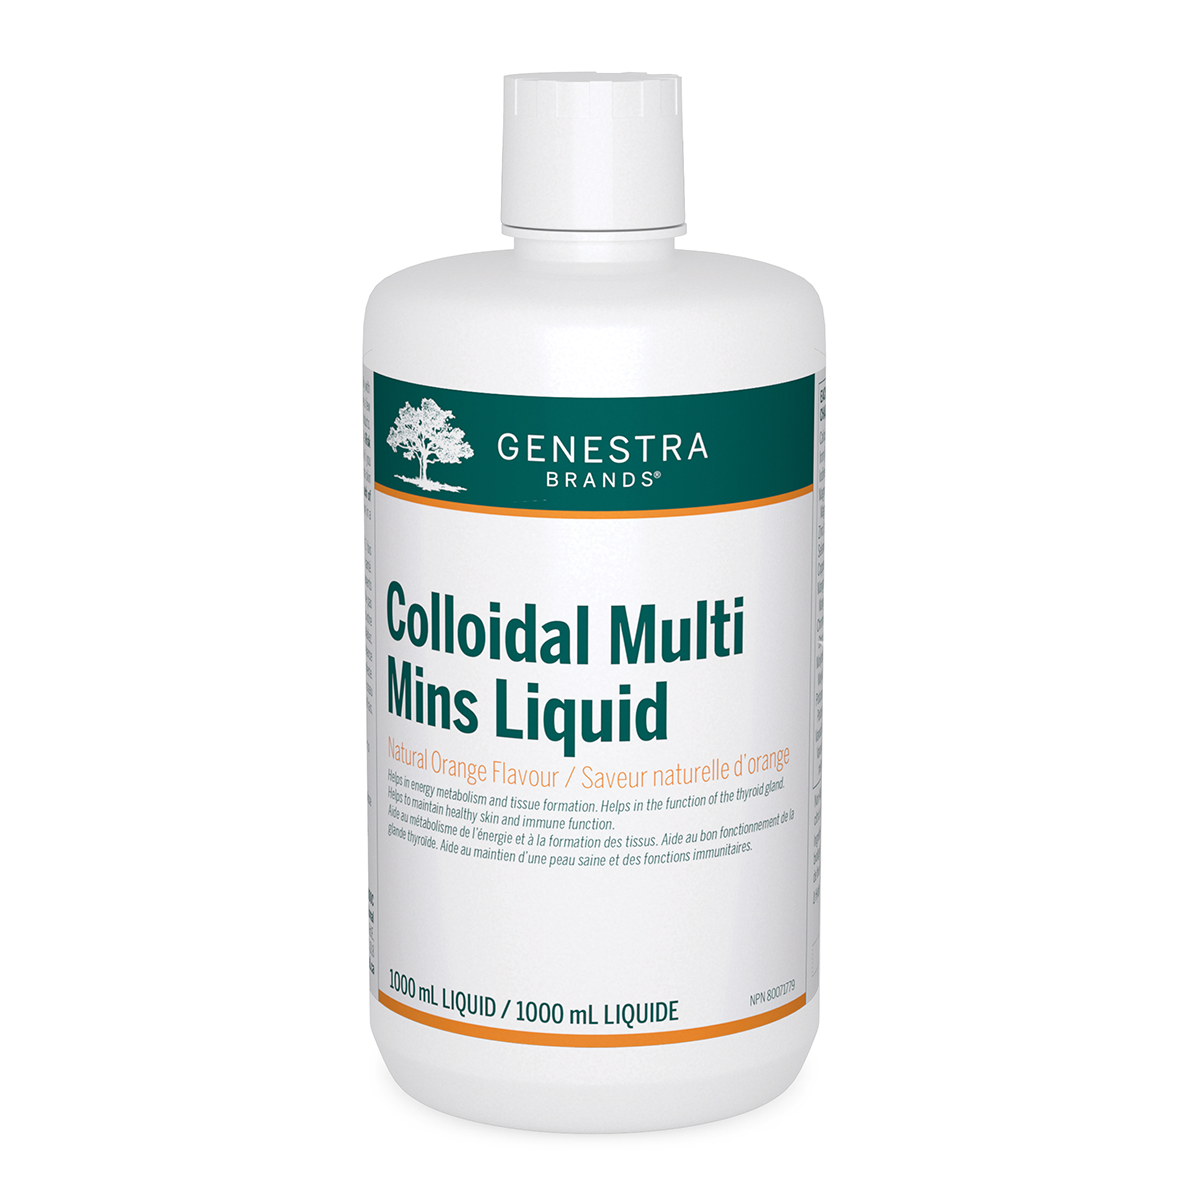 Genestra Colloidal Multi Mins Liquid 1000ml